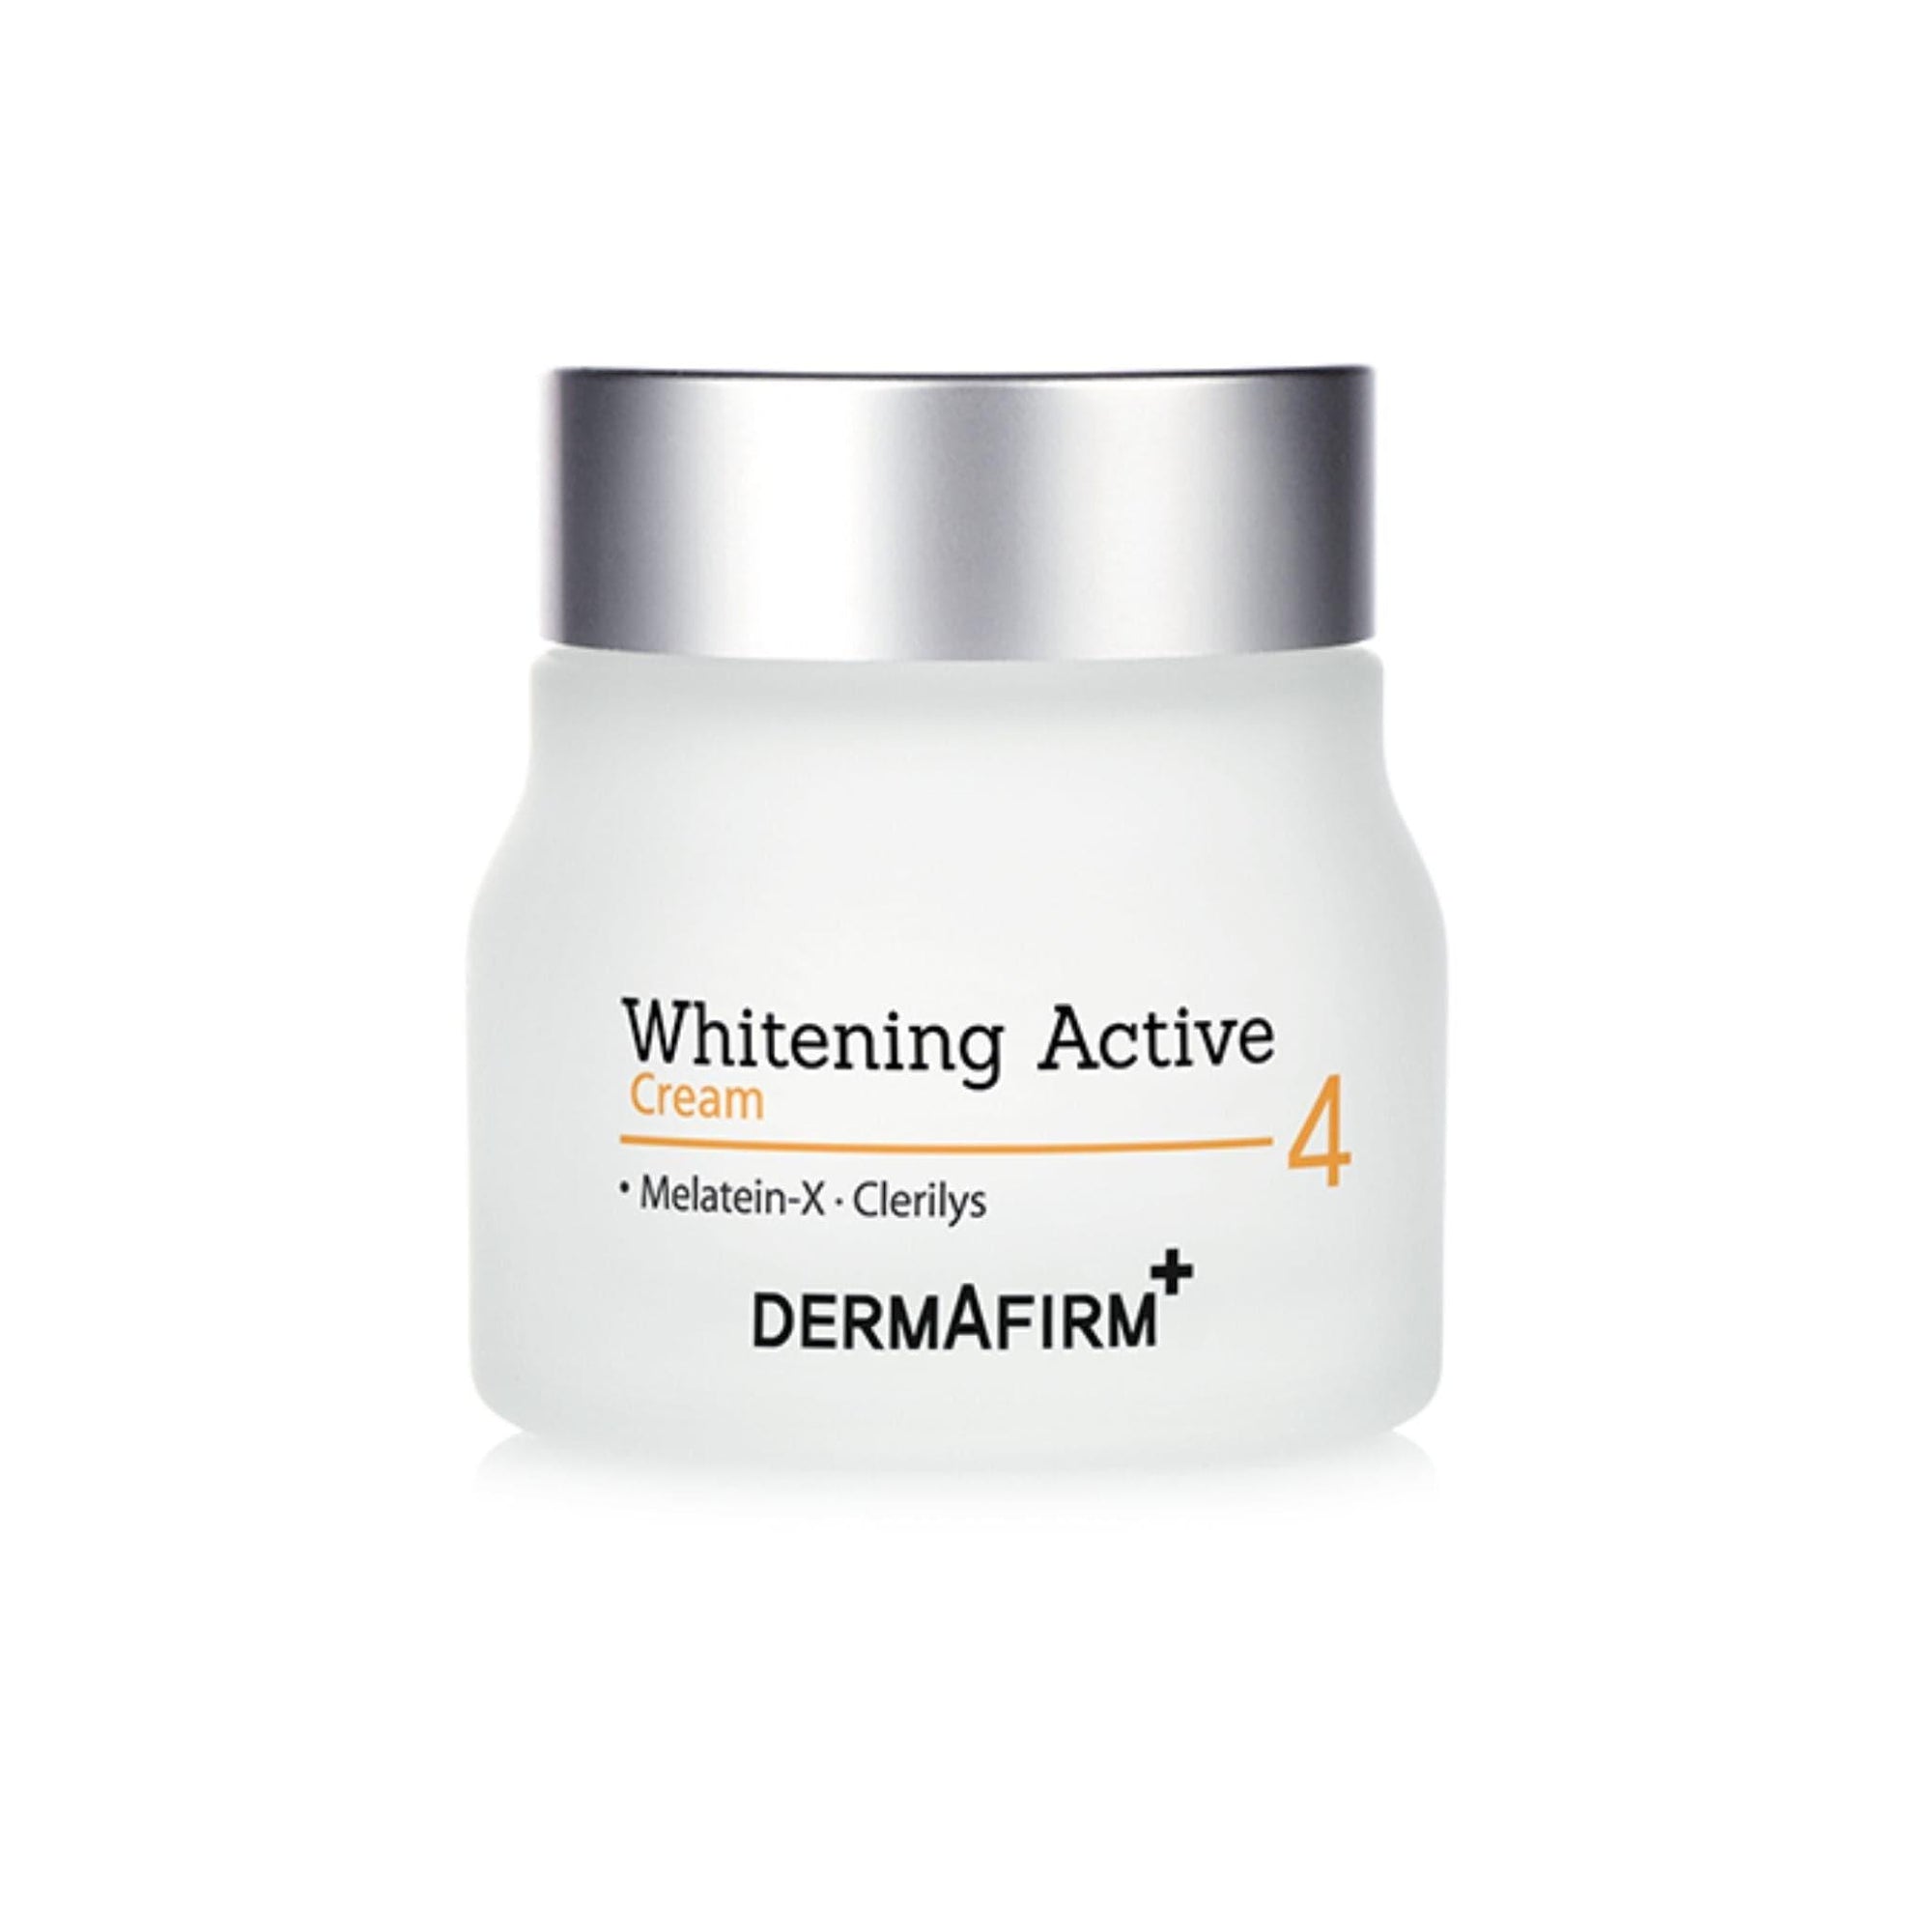 Whitening Active Cream - 60g - Dermafirm USA